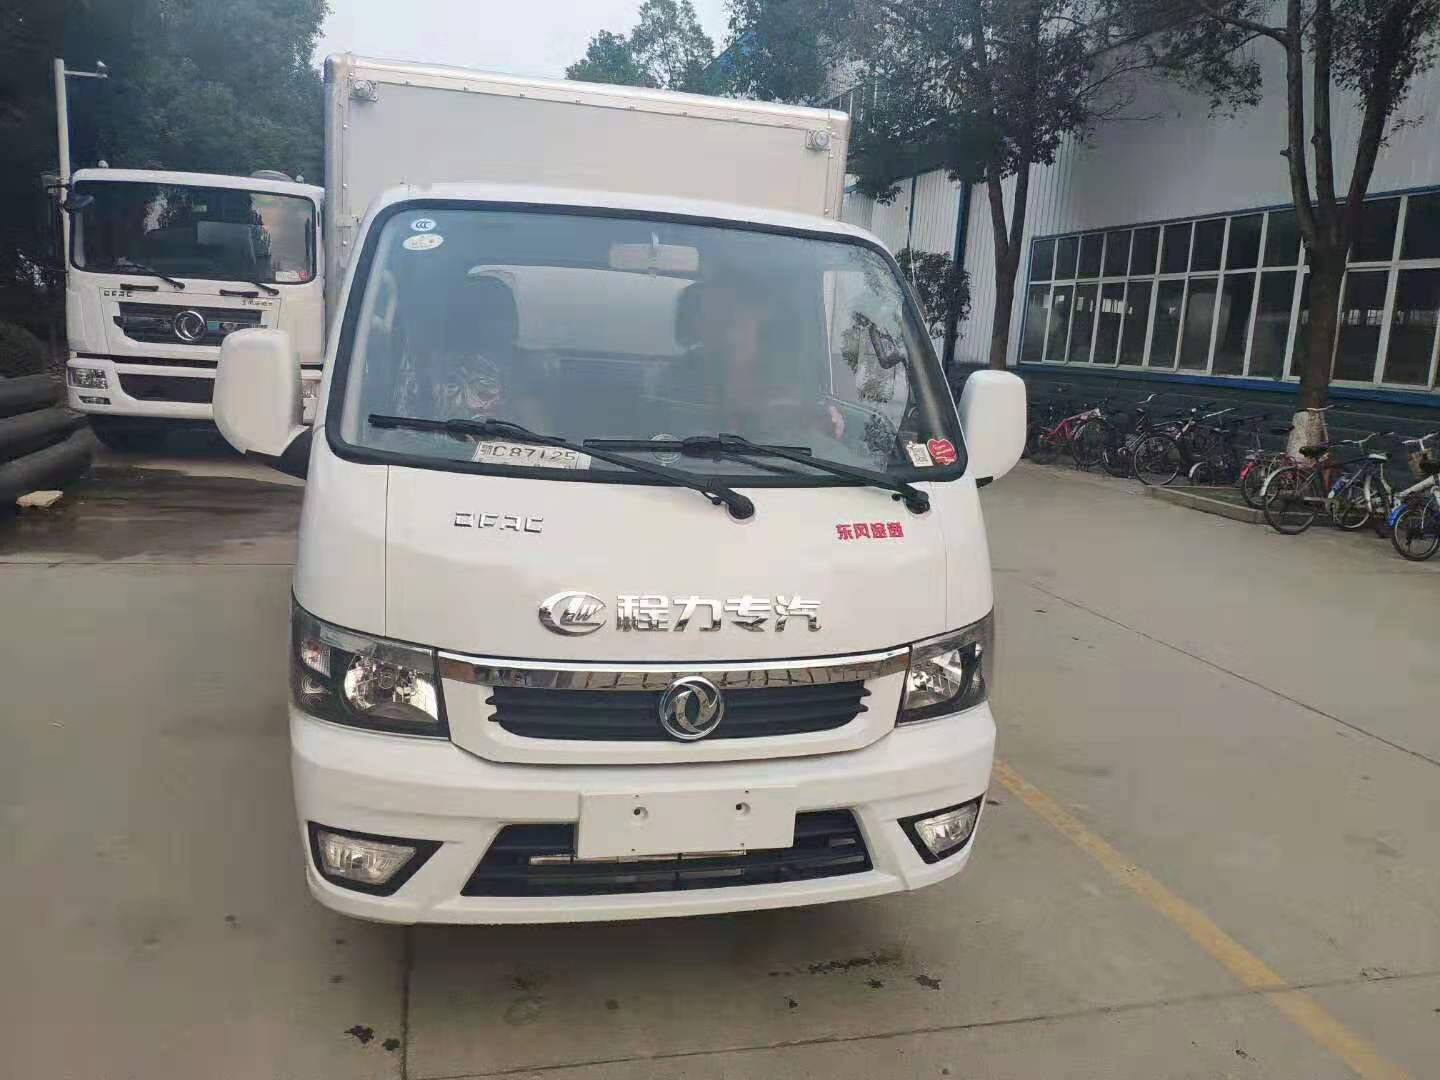 景德鎮江淮6.2米氣瓶運輸車具體要求